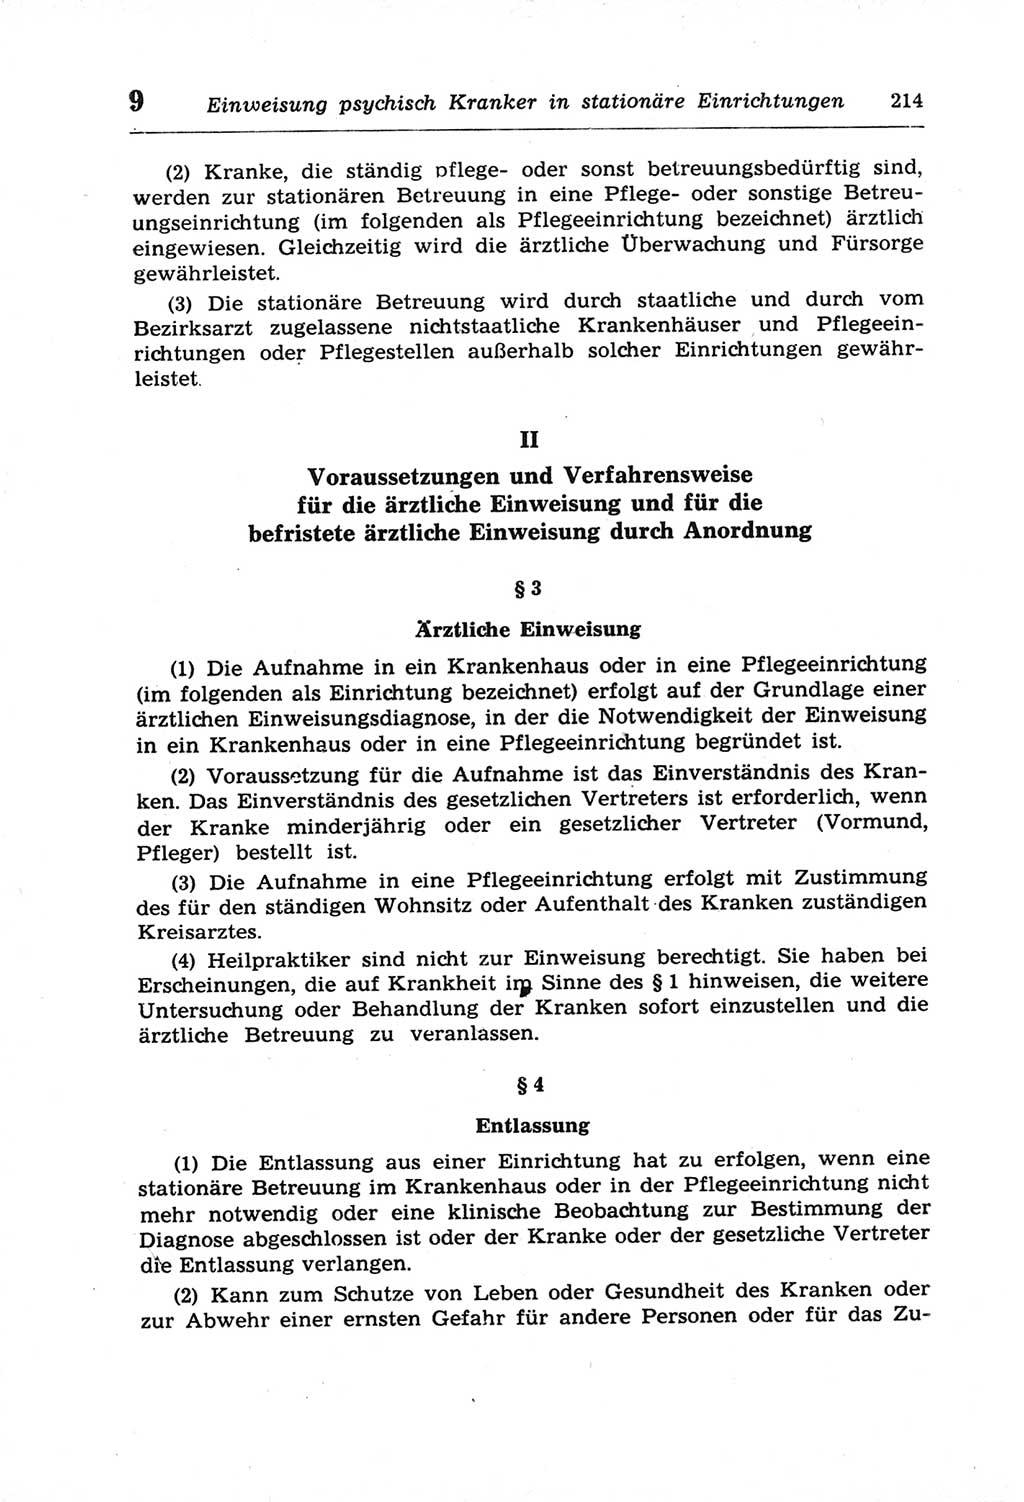 Strafprozeßordnung (StPO) der Deutschen Demokratischen Republik (DDR) und angrenzende Gesetze und Bestimmungen 1968, Seite 214 (StPO Ges. Bstgn. DDR 1968, S. 214)